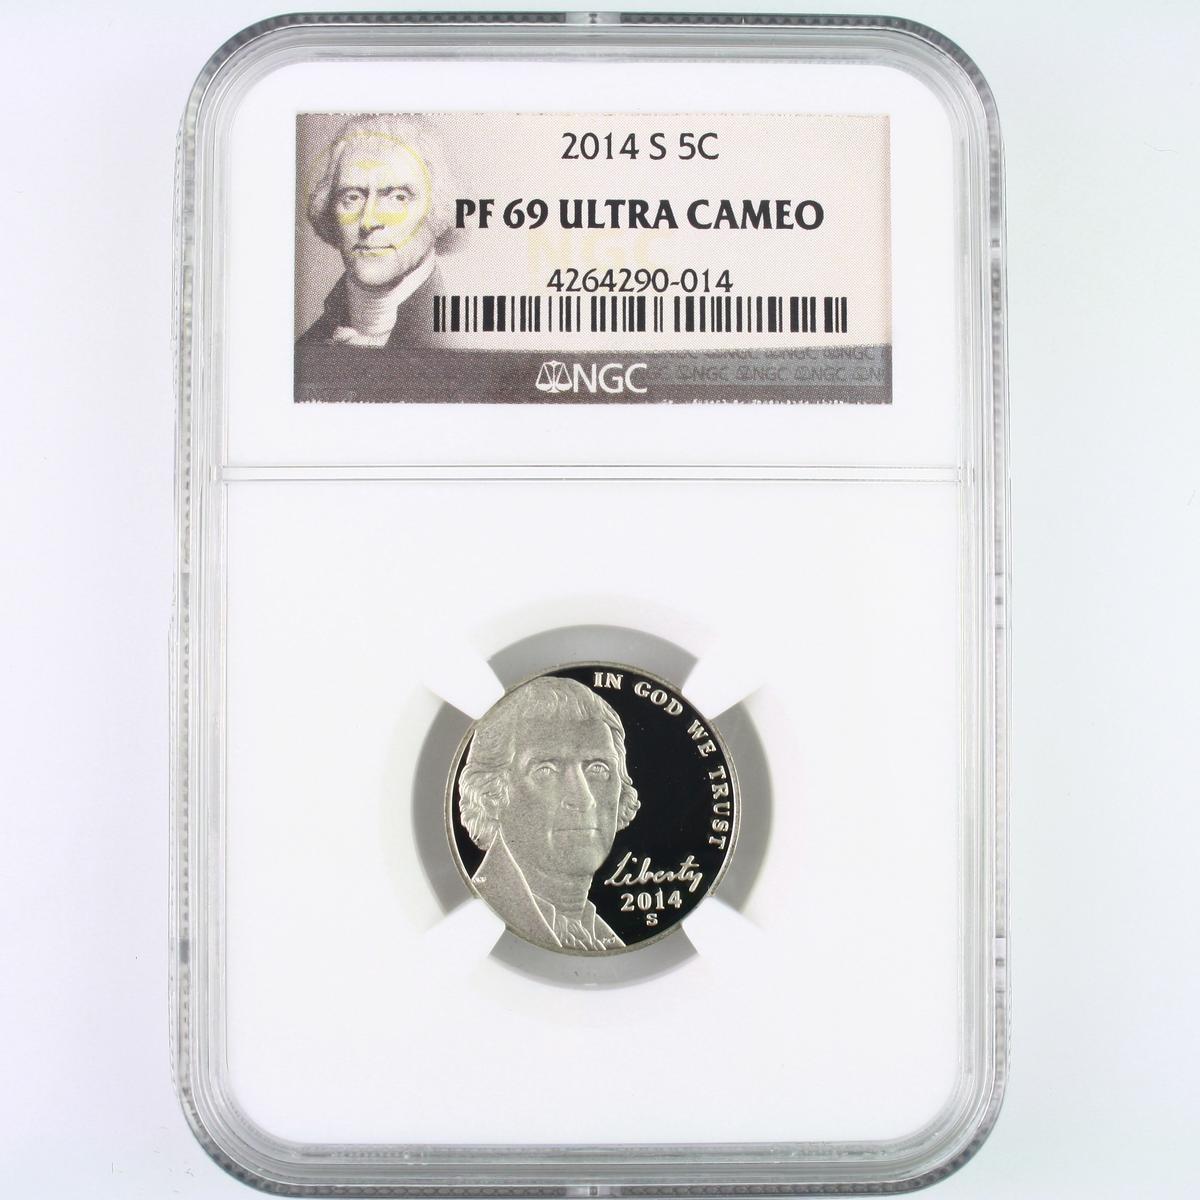 Certified 2014-S proof U.S. Jefferson nickel